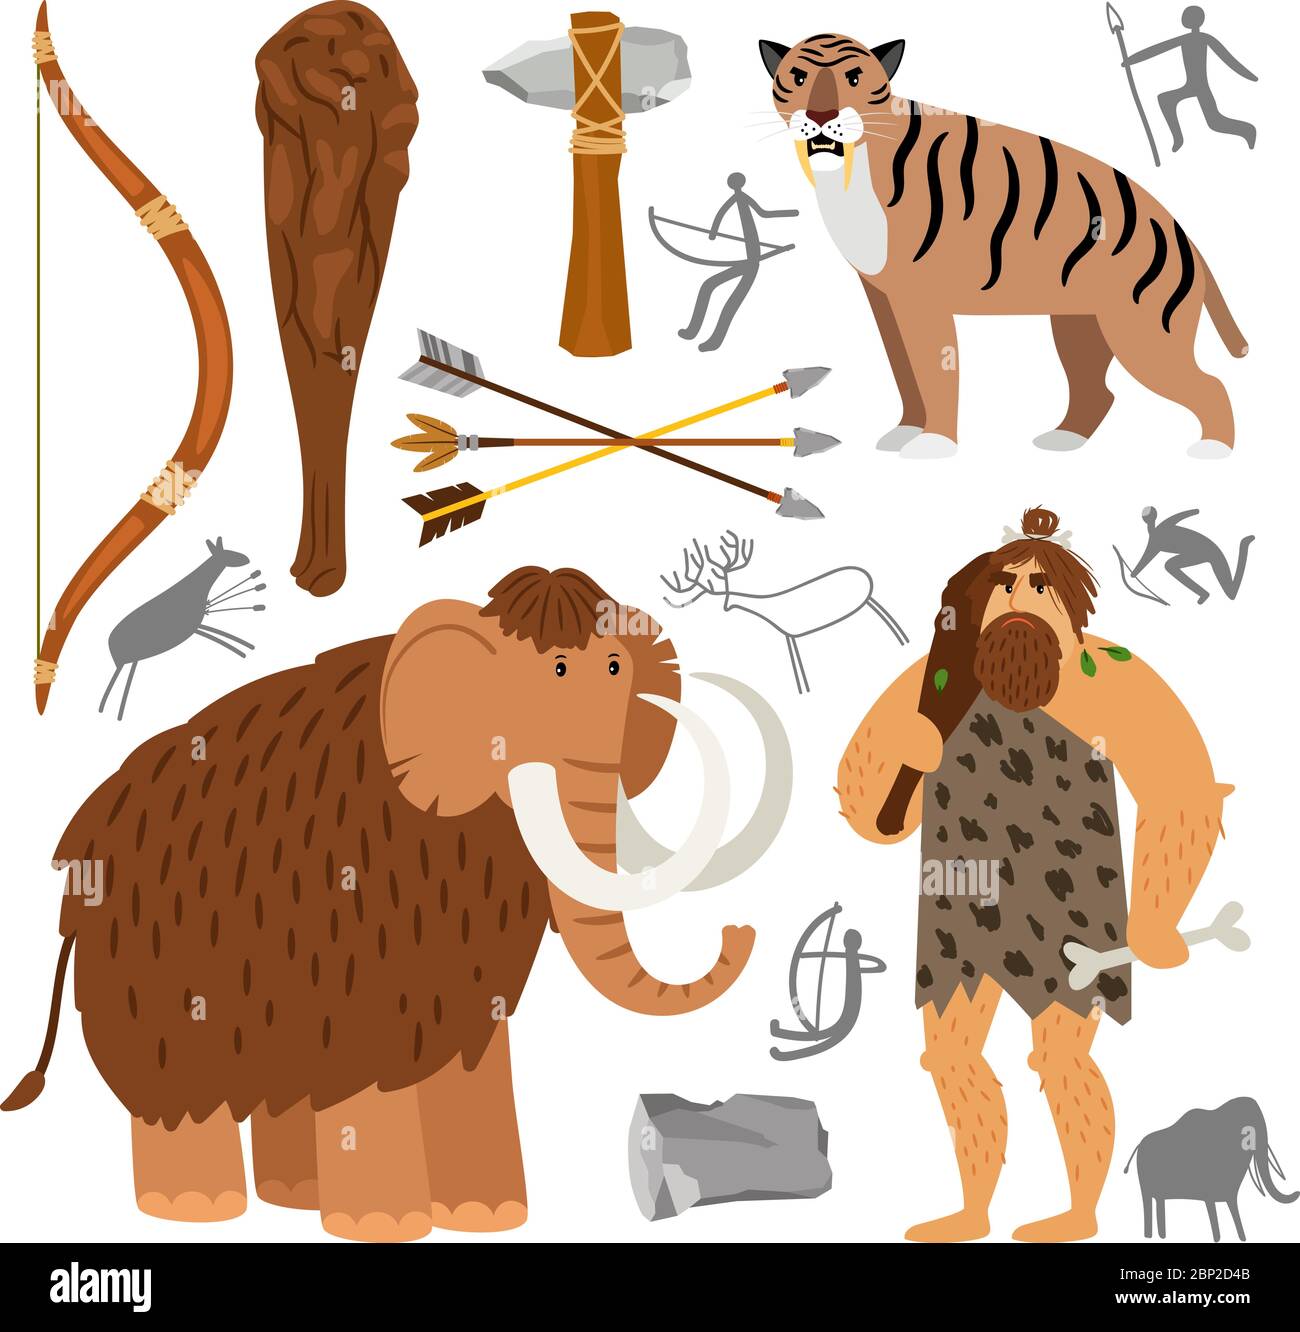 Alte Homosapiens. Steinzeit neandertaler Höhlenmensch Vektor-Illustration, primitive Überlebenswerkzeuge und prähistorischen wolligen Mammut und Höhlentier auf weißem Hintergrund isoliert Stock Vektor